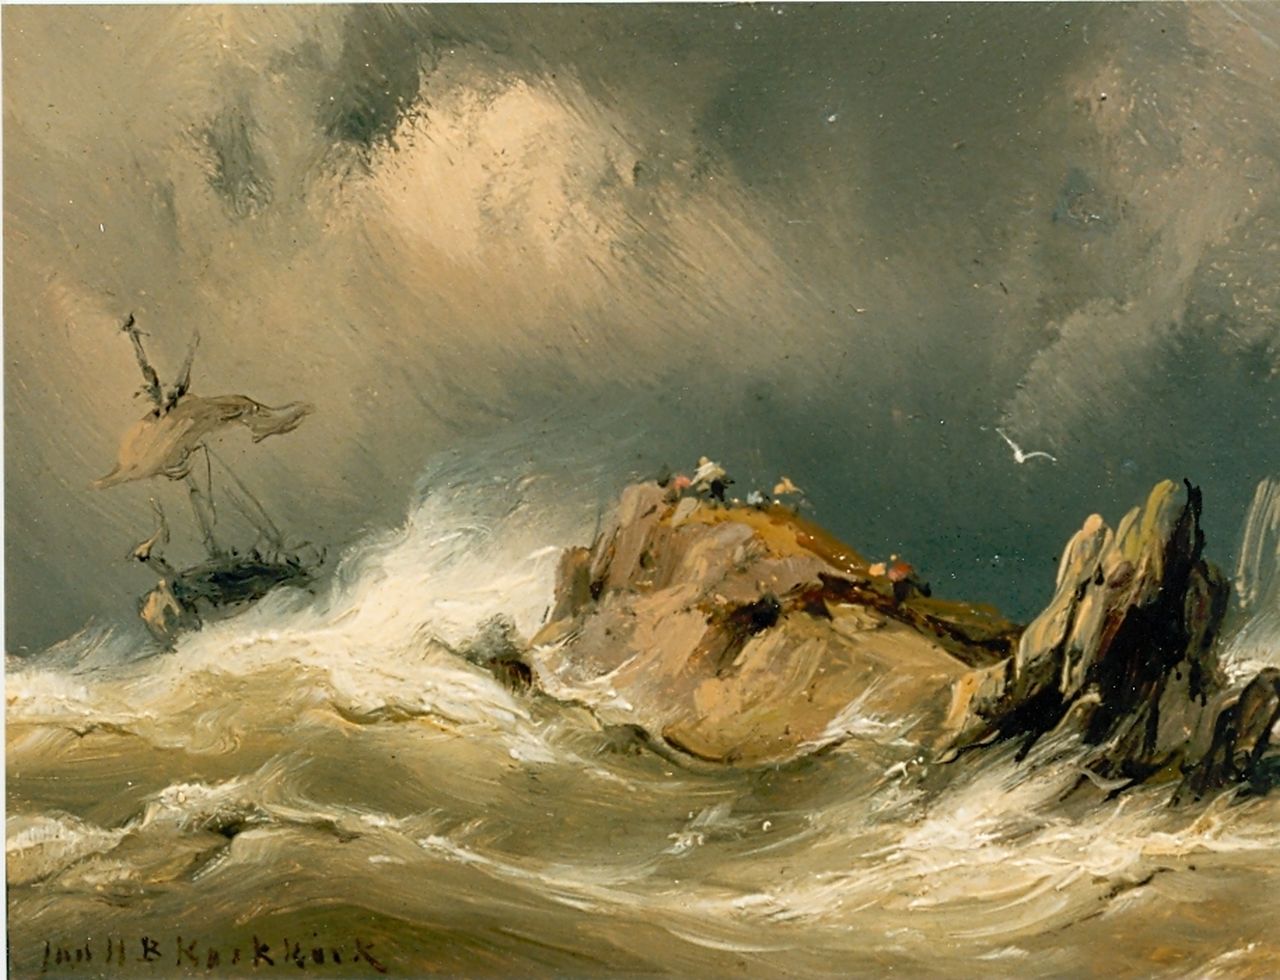 Koekkoek J.H.B.  | Johannes Hermanus Barend 'Jan H.B.' Koekkoek, Schip op woeste zee, olieverf op paneel 8,4 x 11,1 cm, gesigneerd linksonder